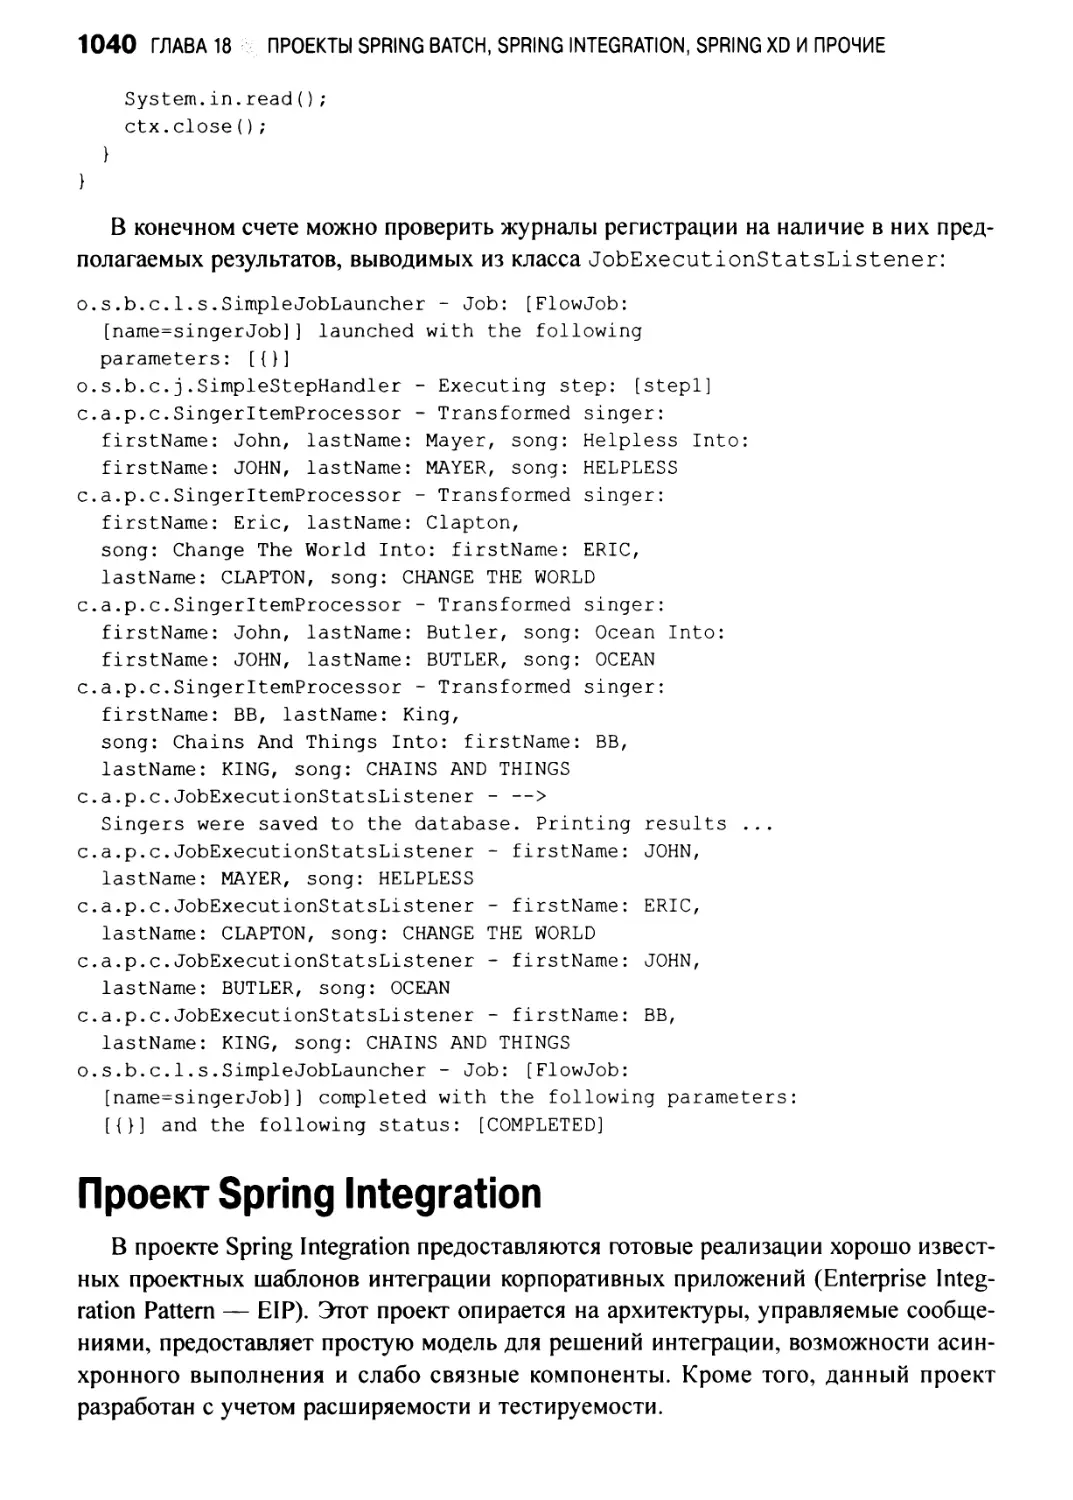 Проект Spring Integration